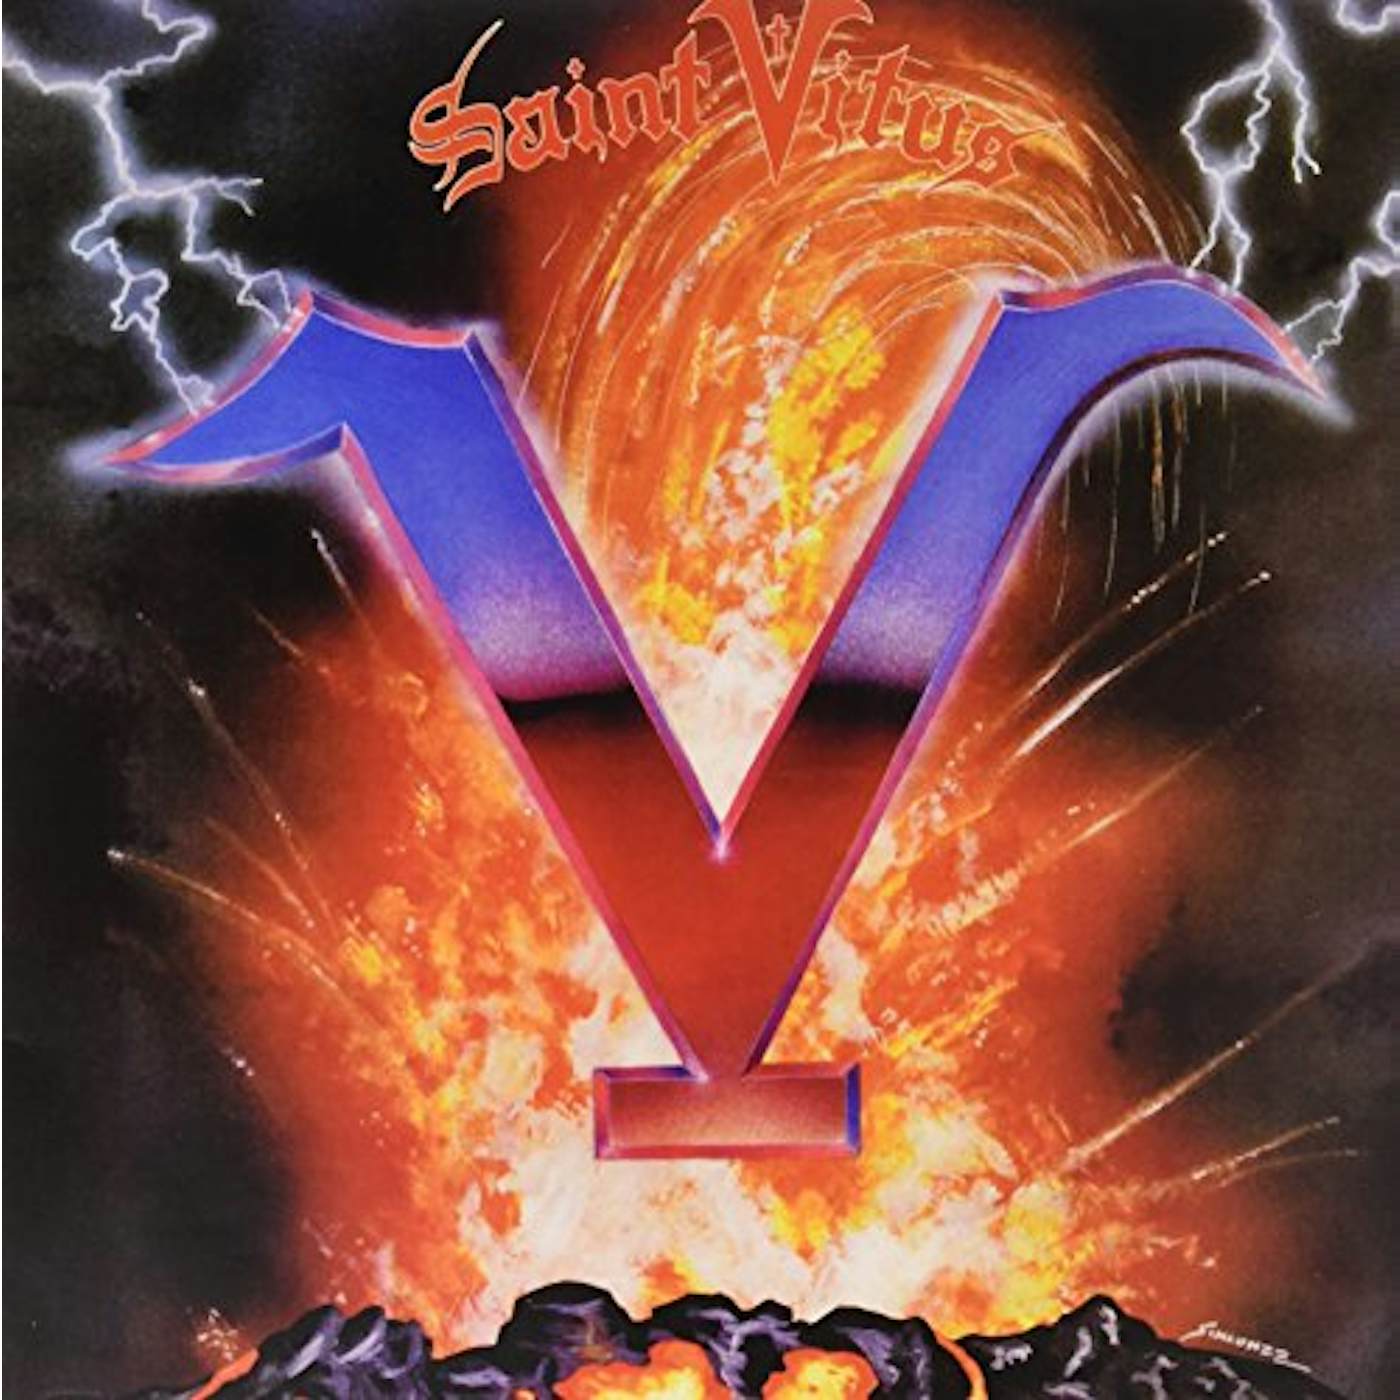 Saint Vitus V Vinyl Record